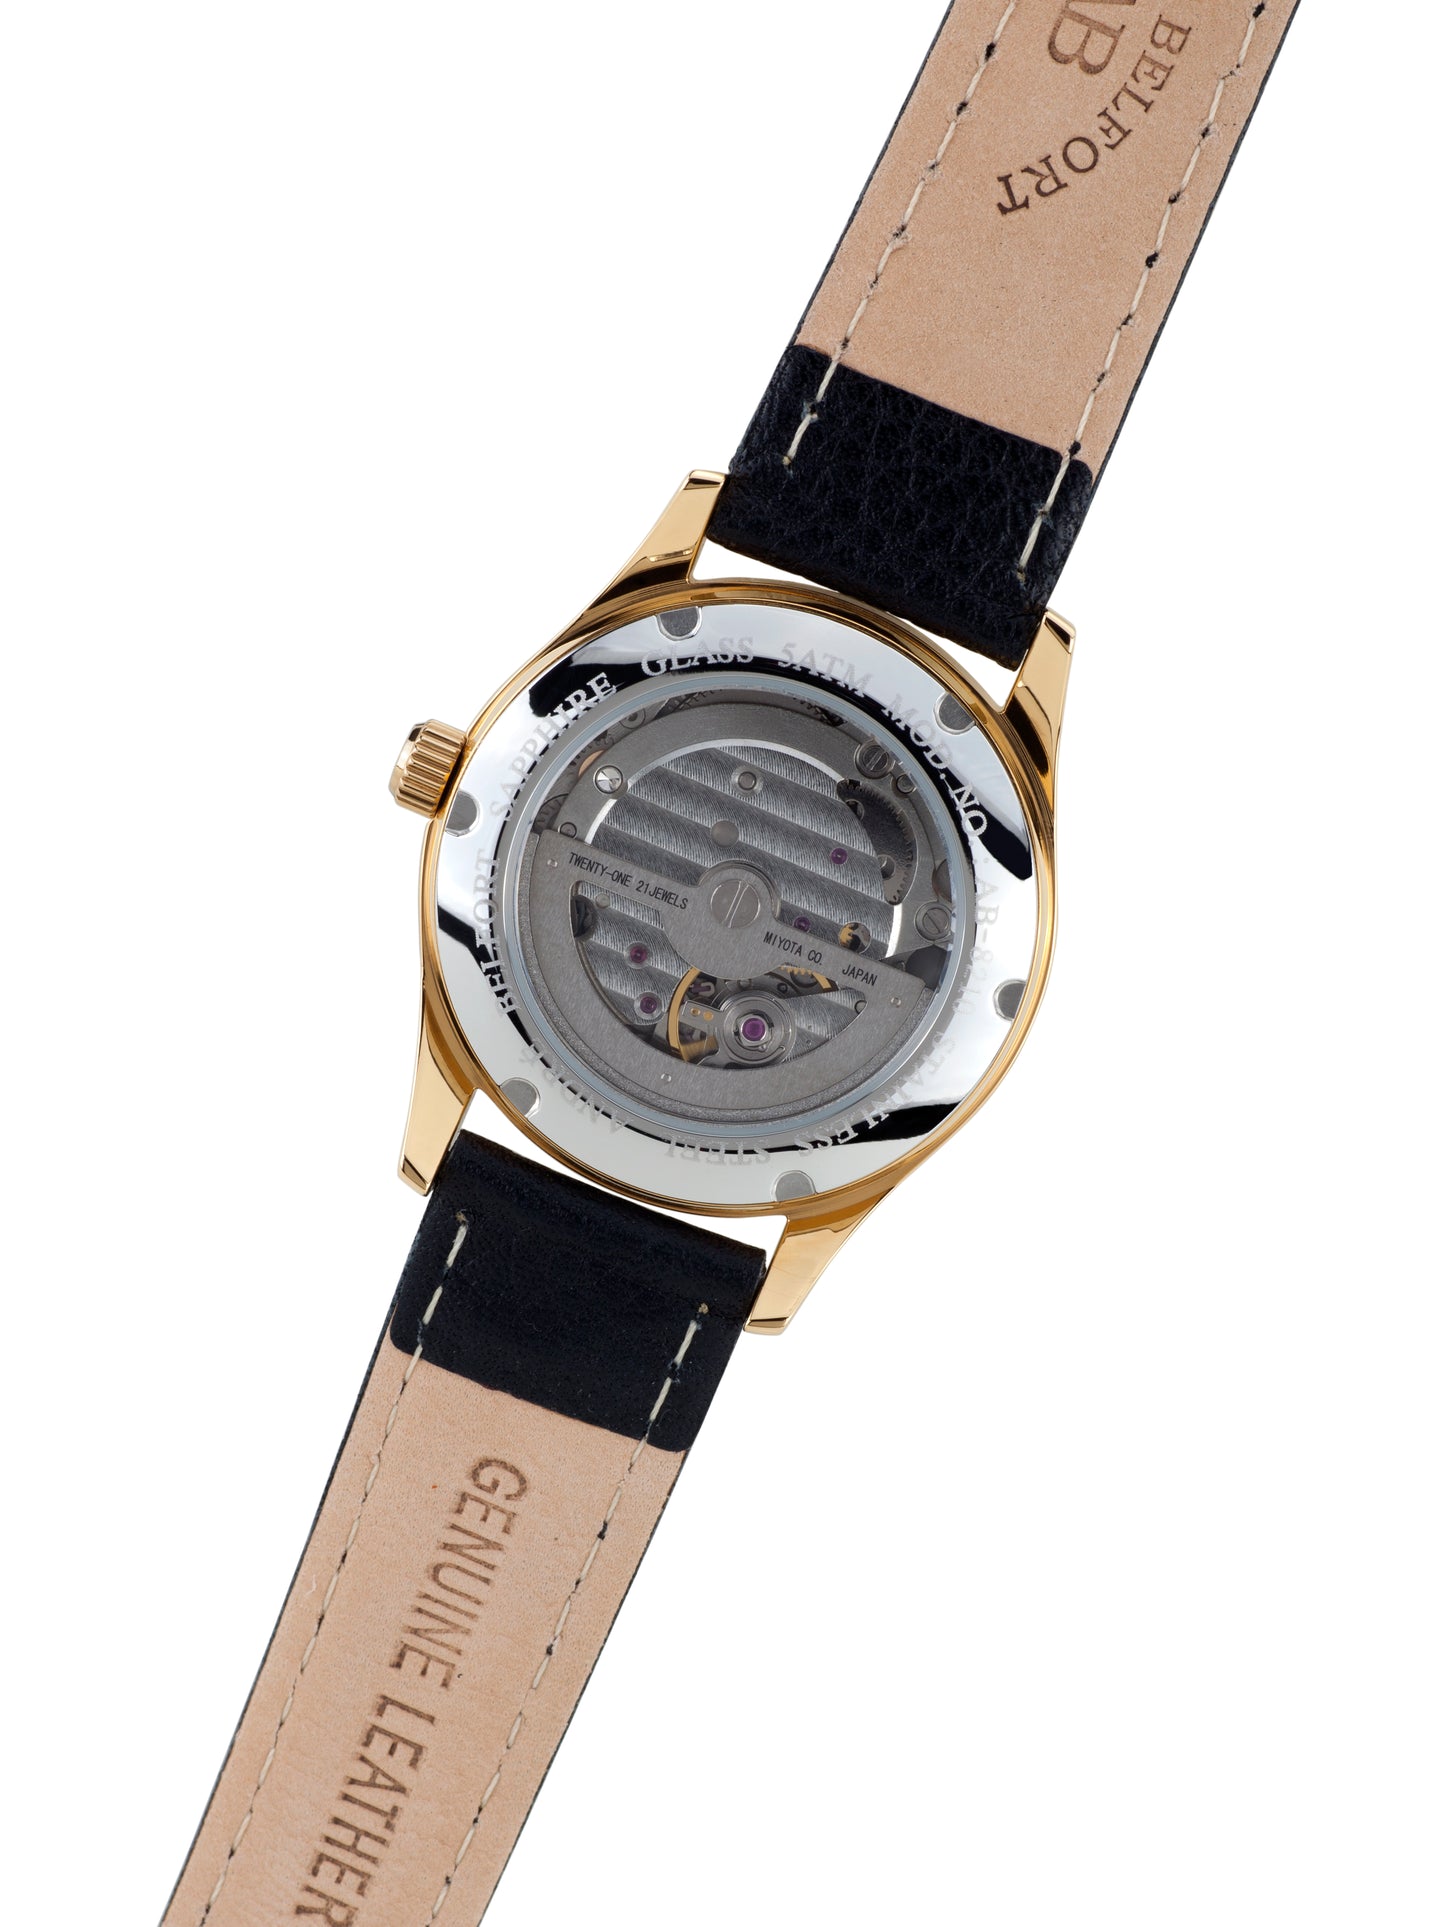 Automatic watches — Déméter — André Belfort — gold black